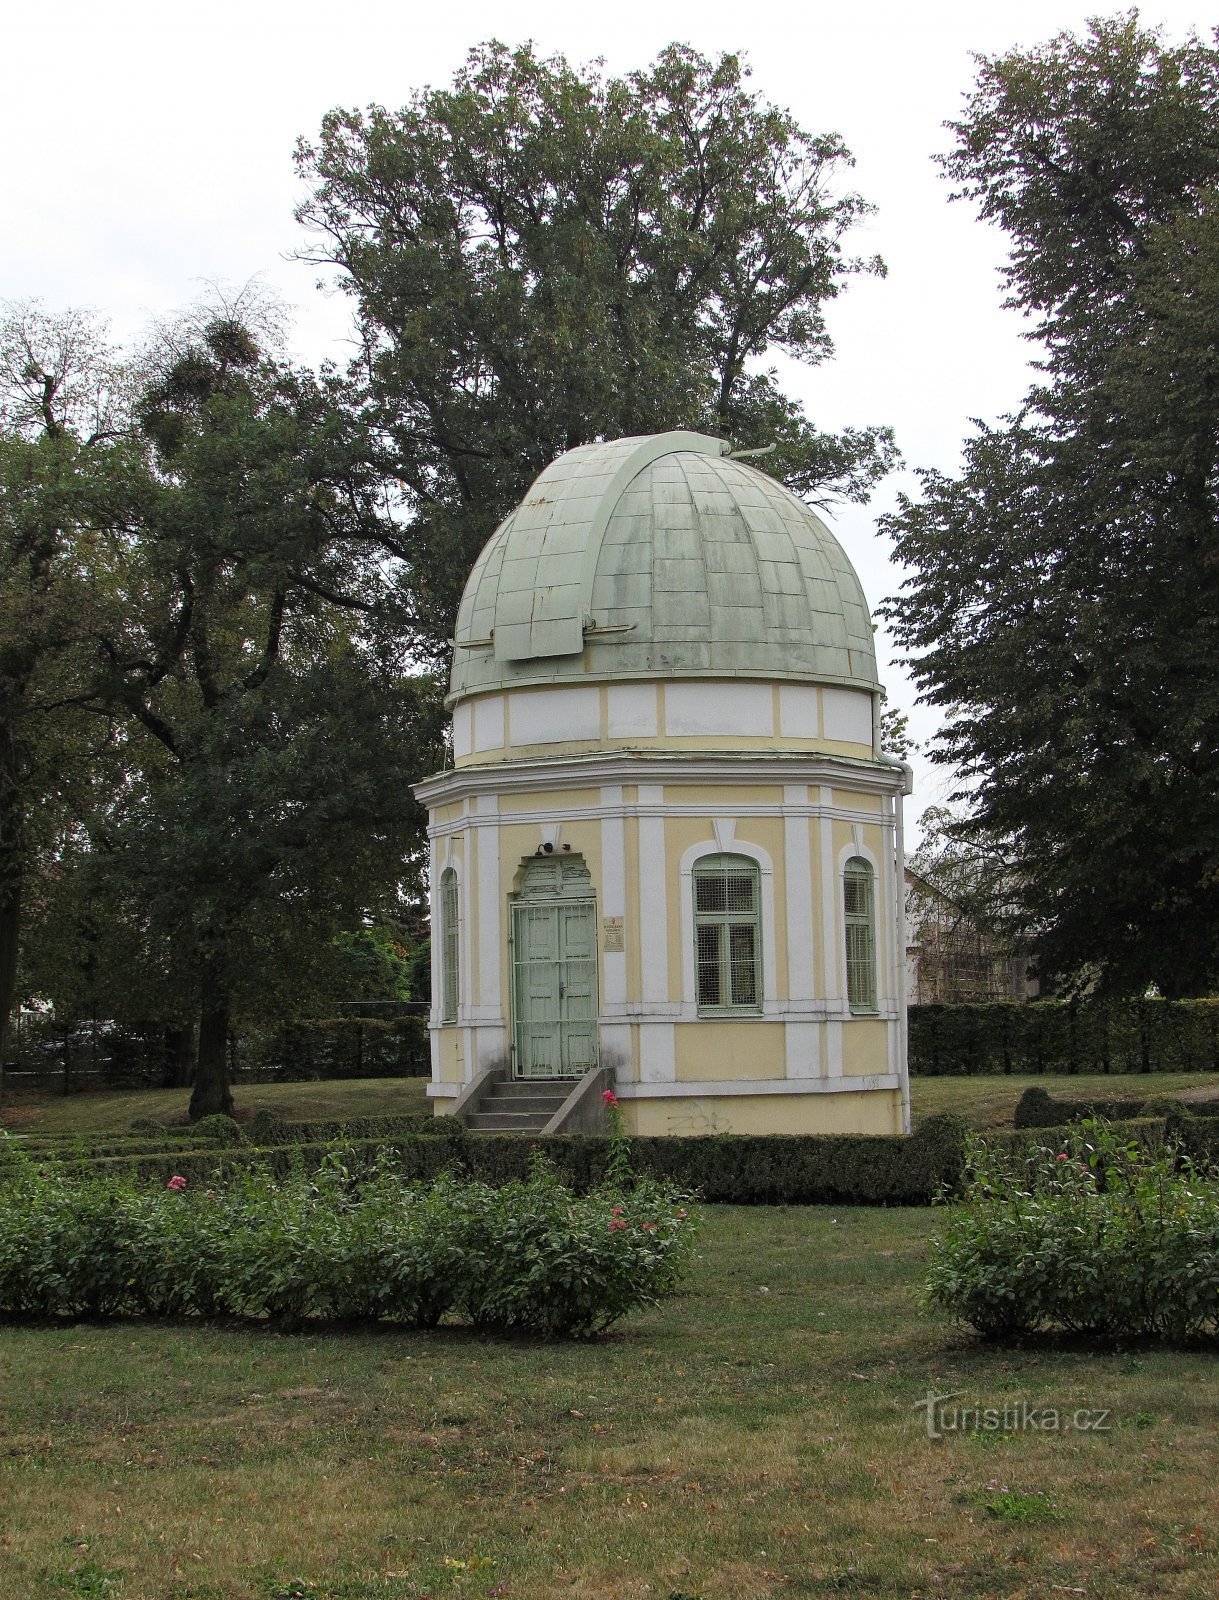 Holešov - monument till kompositören och observatoriet